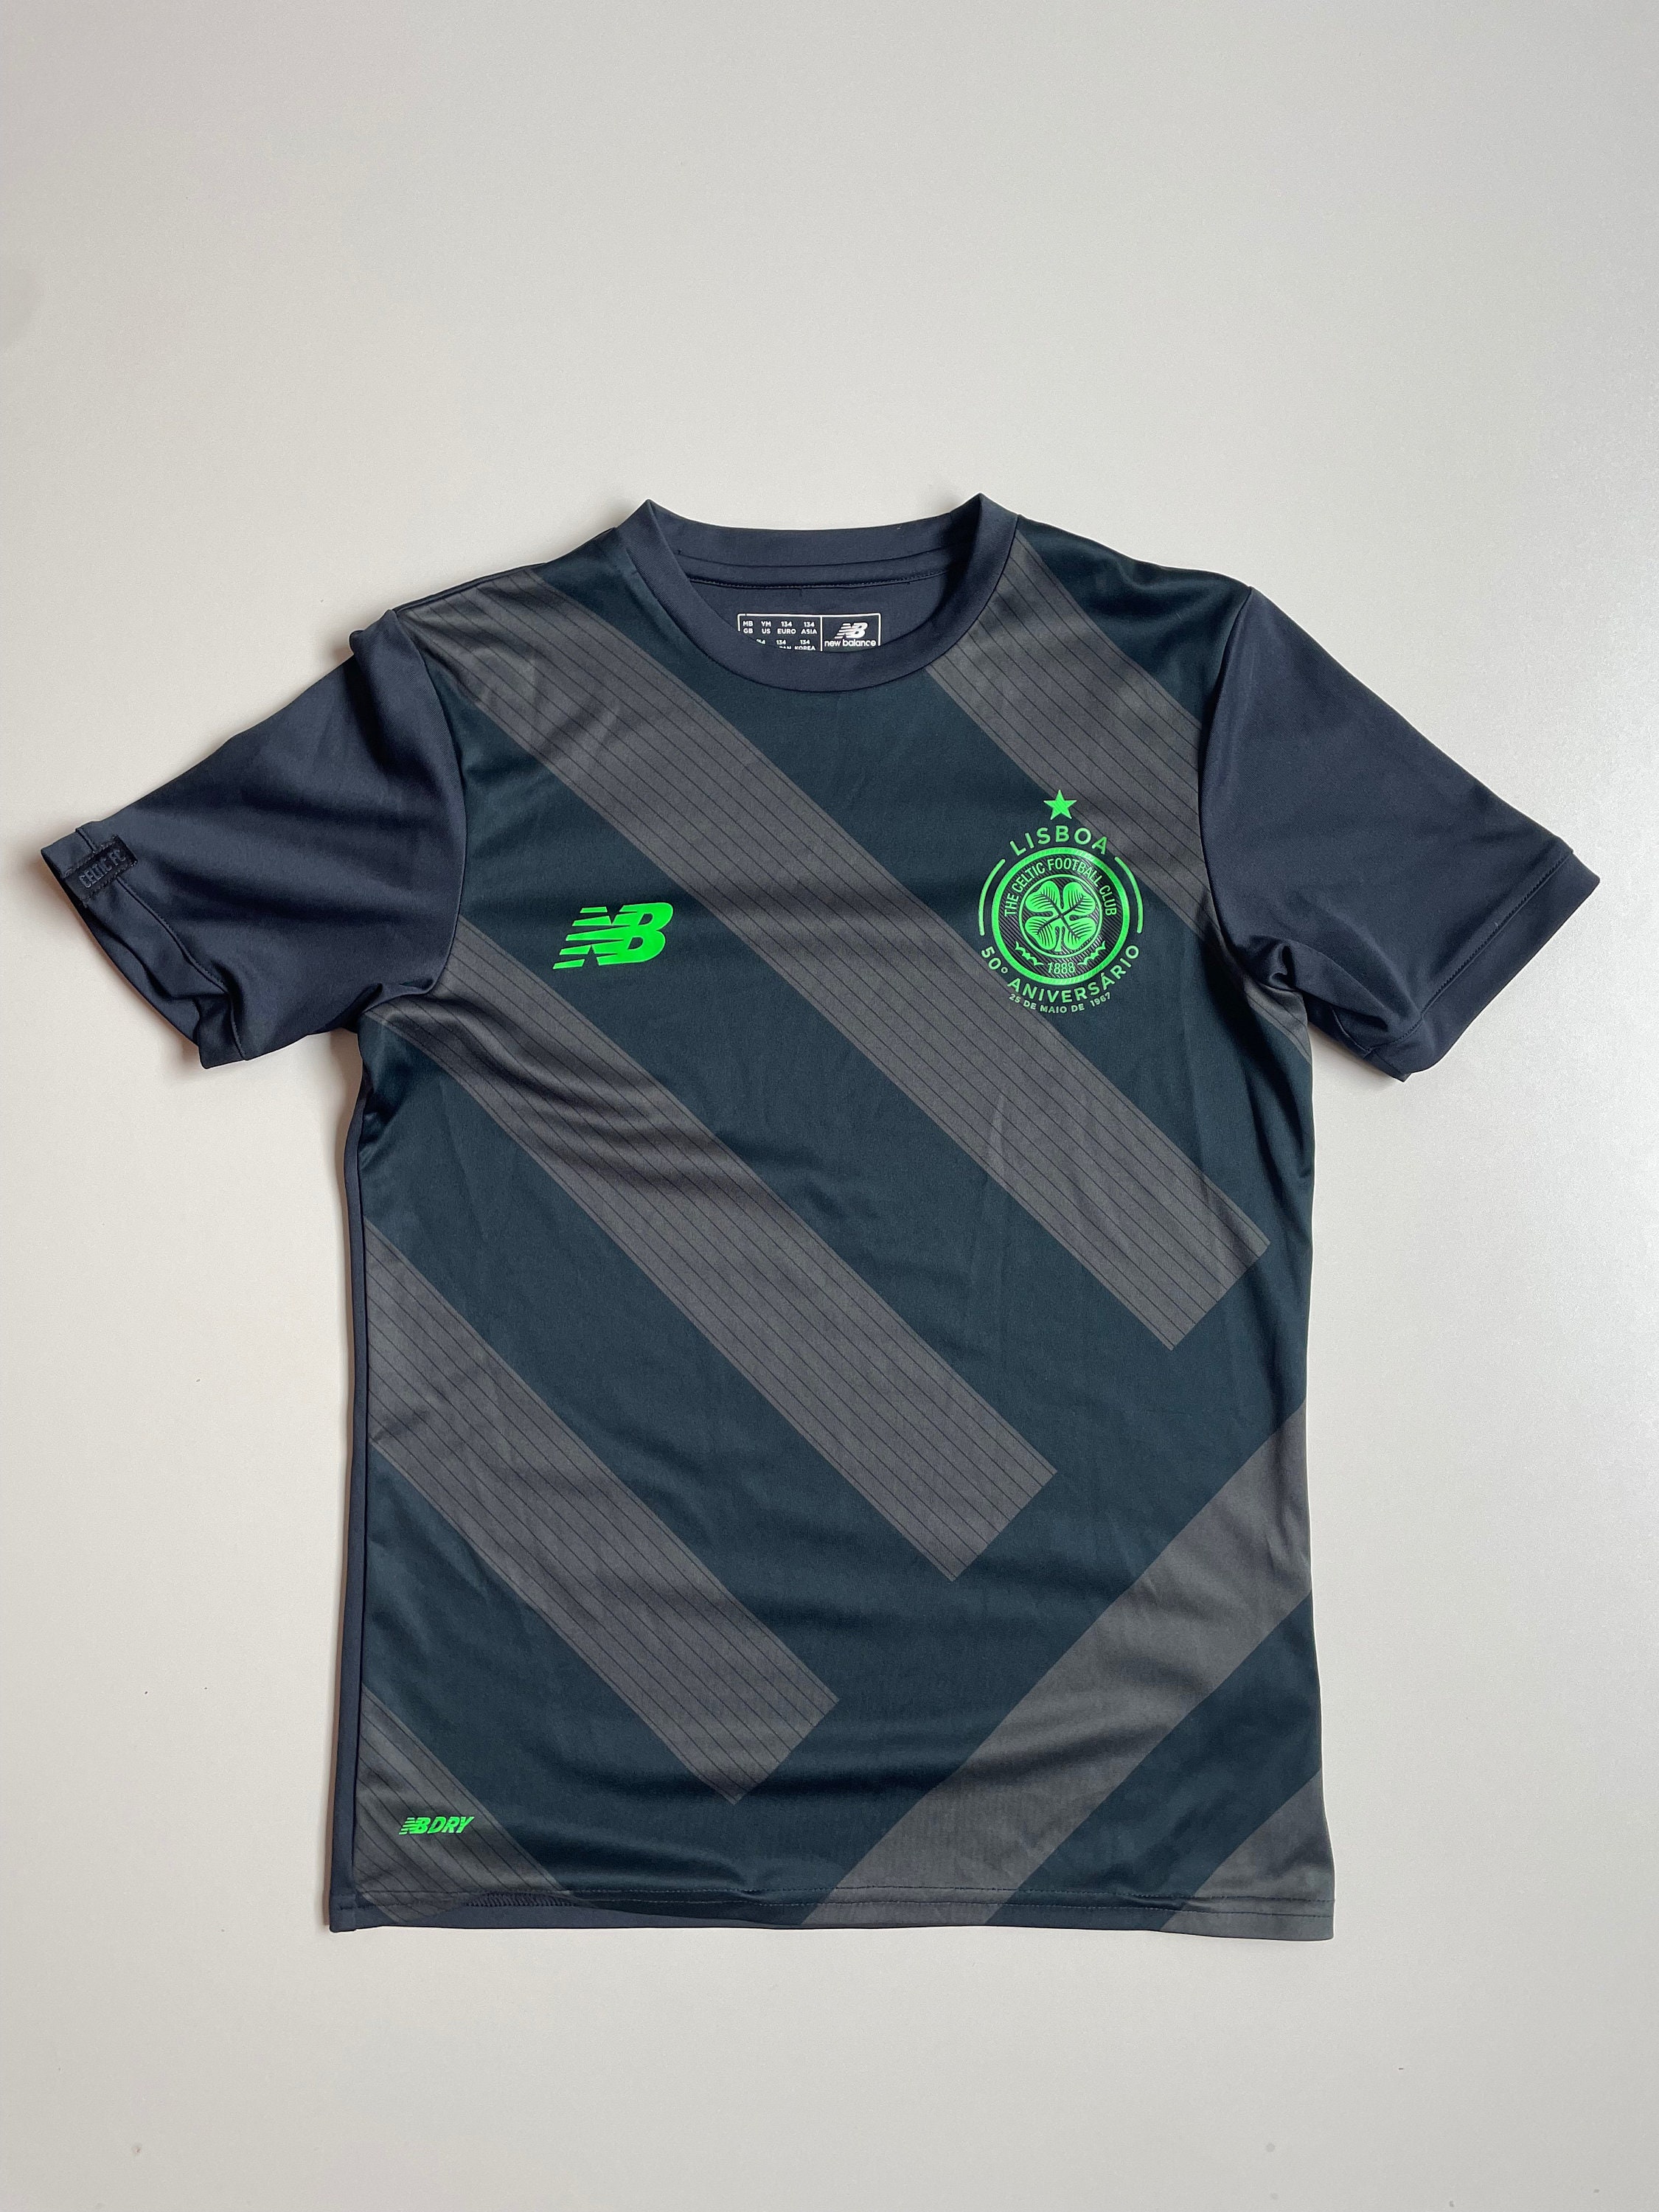 Celtic F.C. SPFL Scottish Baseball Jersey Shirt Style Men And Women For  Fans - YesItCustom